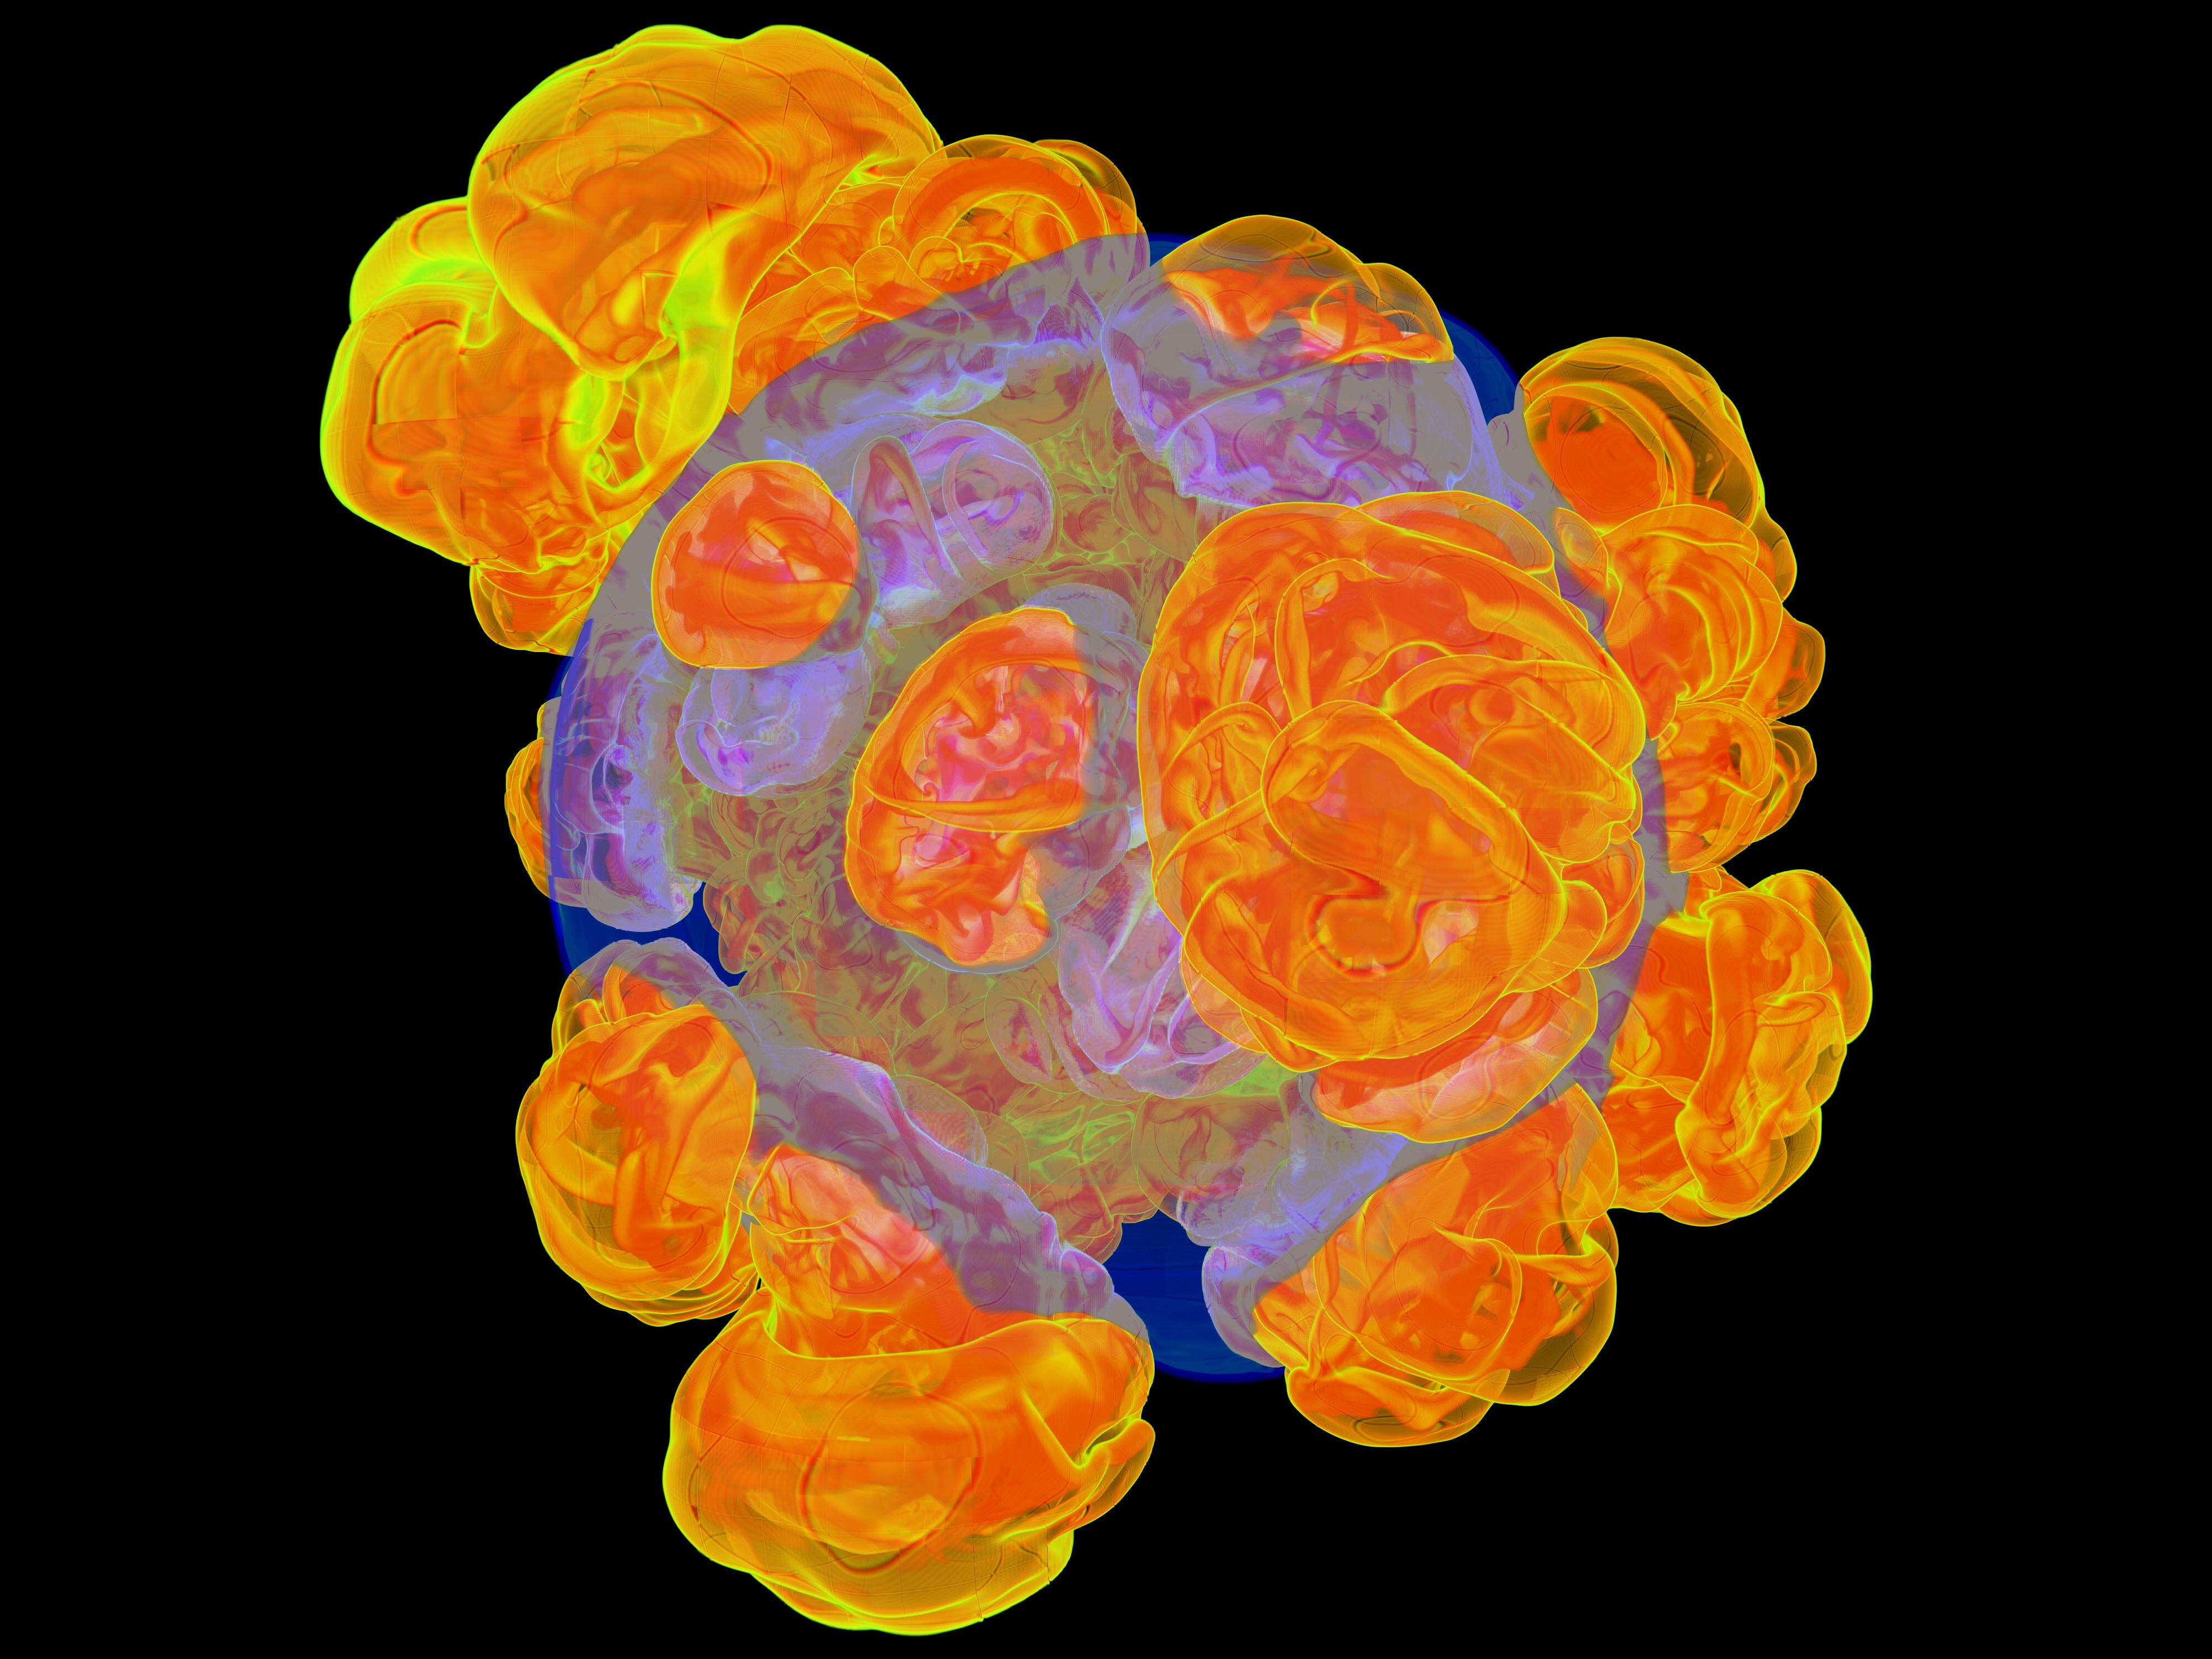 Una visualización hecha vía supercomputadora que recrea una detonación de supernova de tipo Ia.